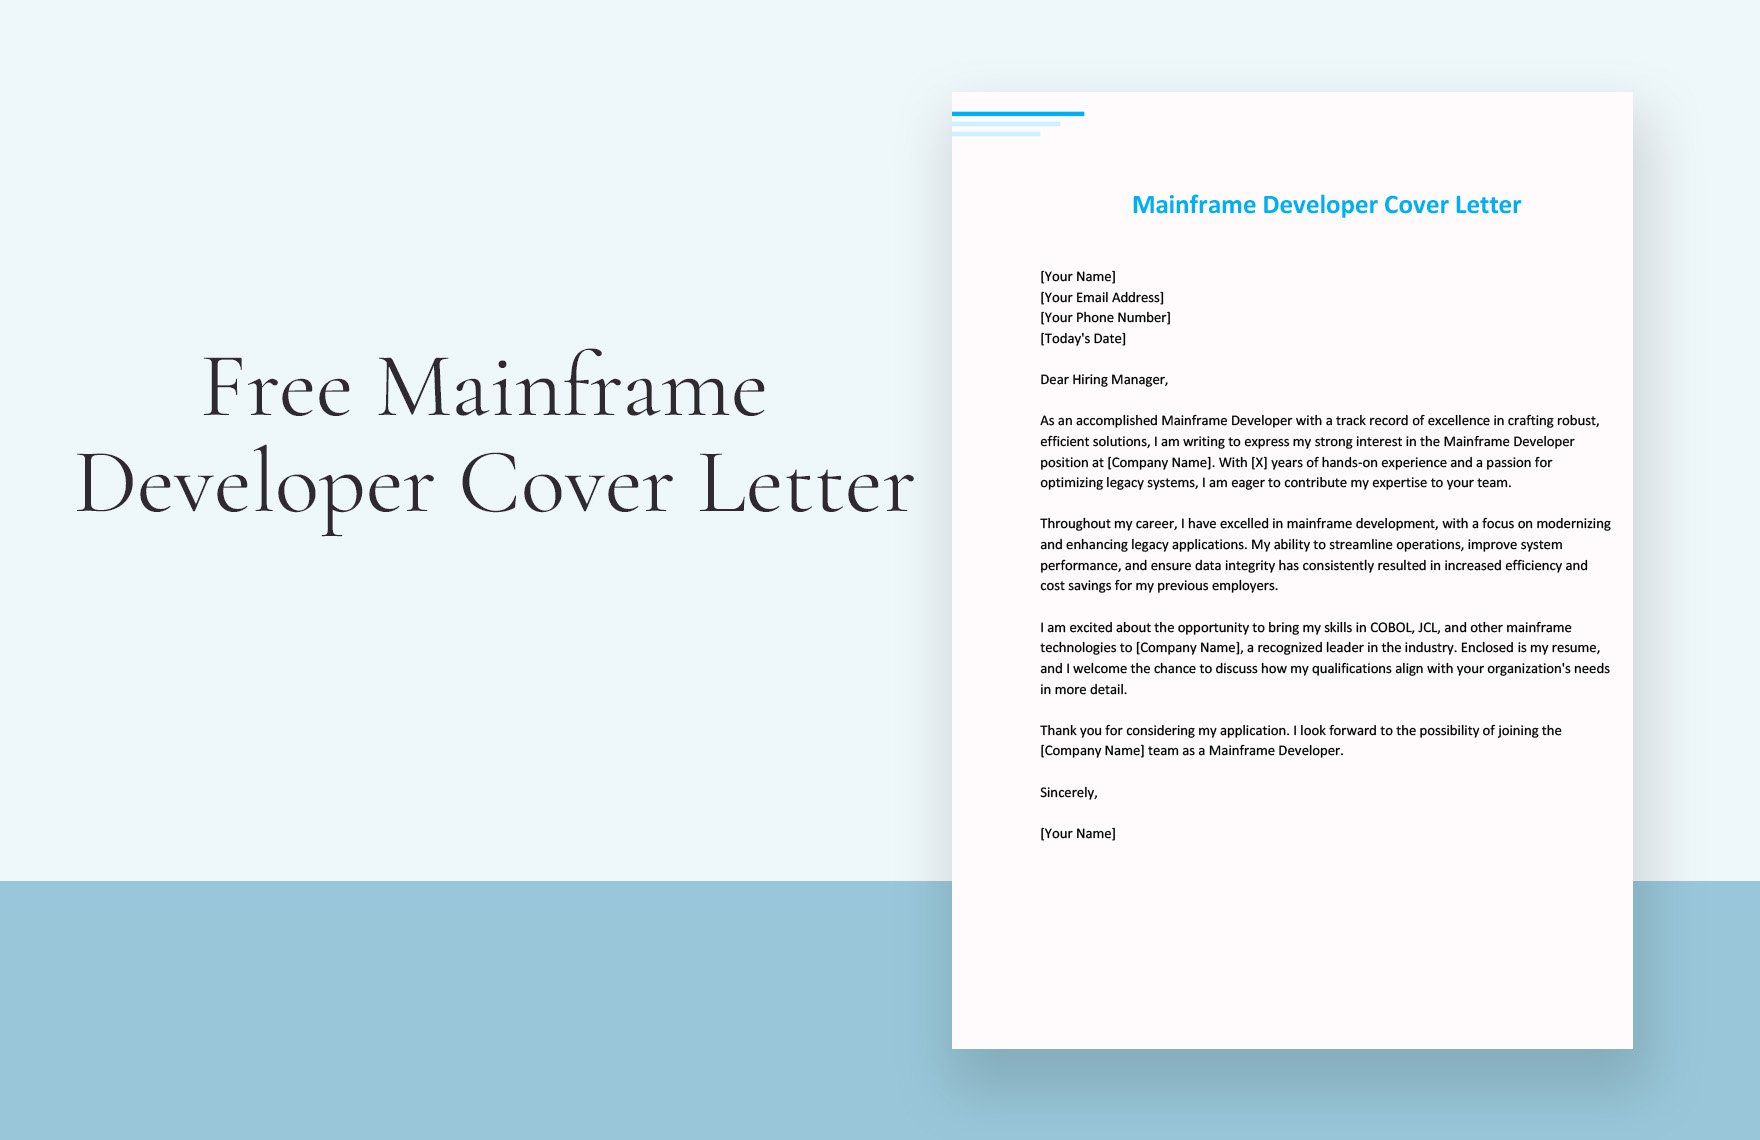 Mainframe Developer Cover Letter